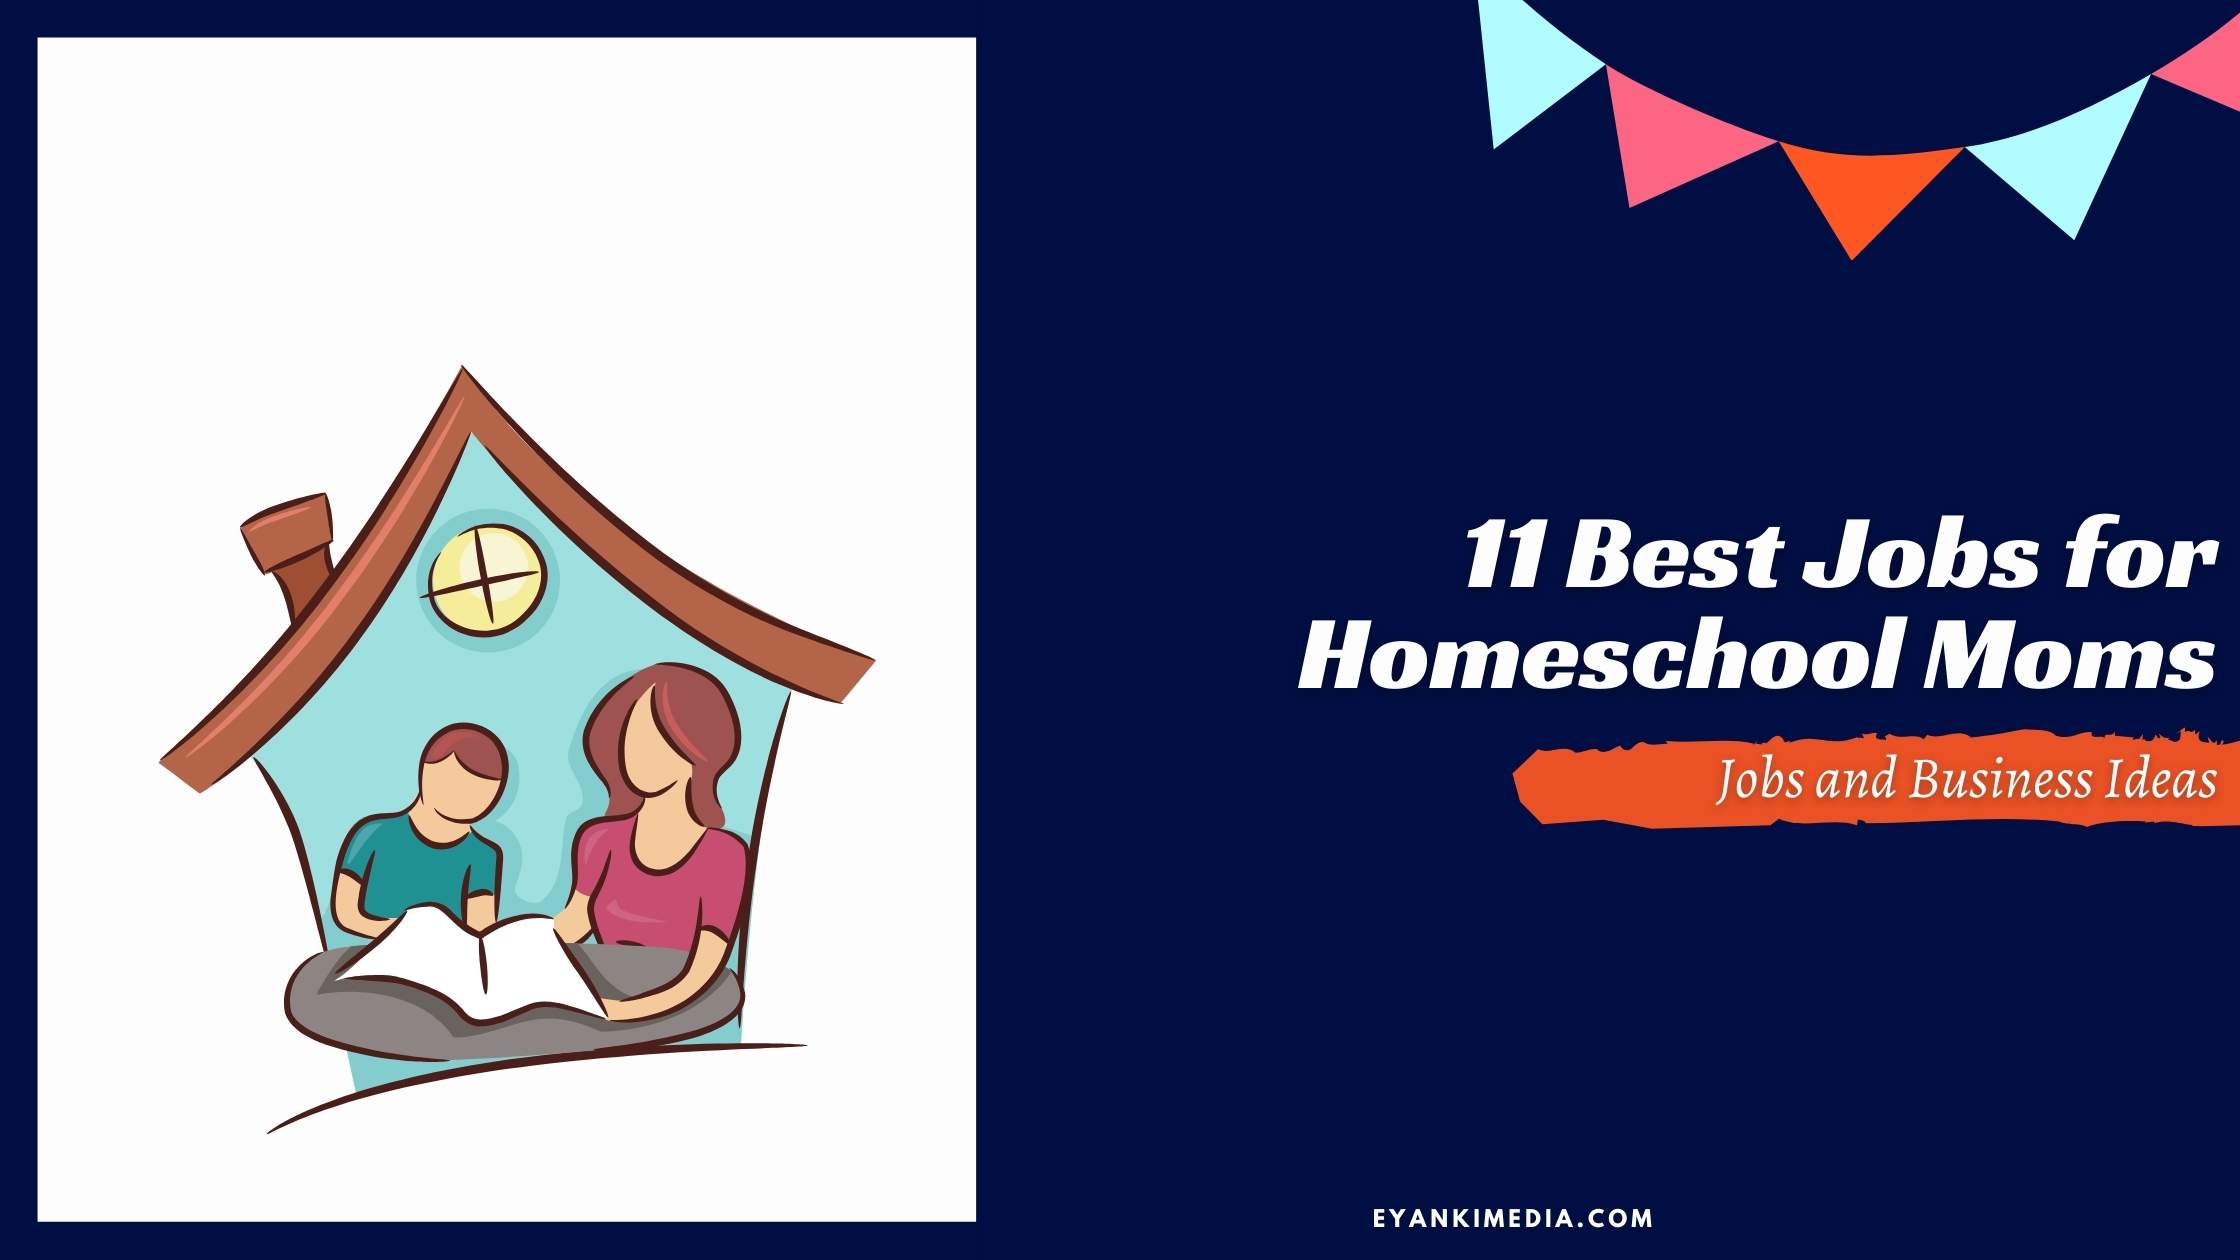 11 Best Jobs for Homeschool Moms